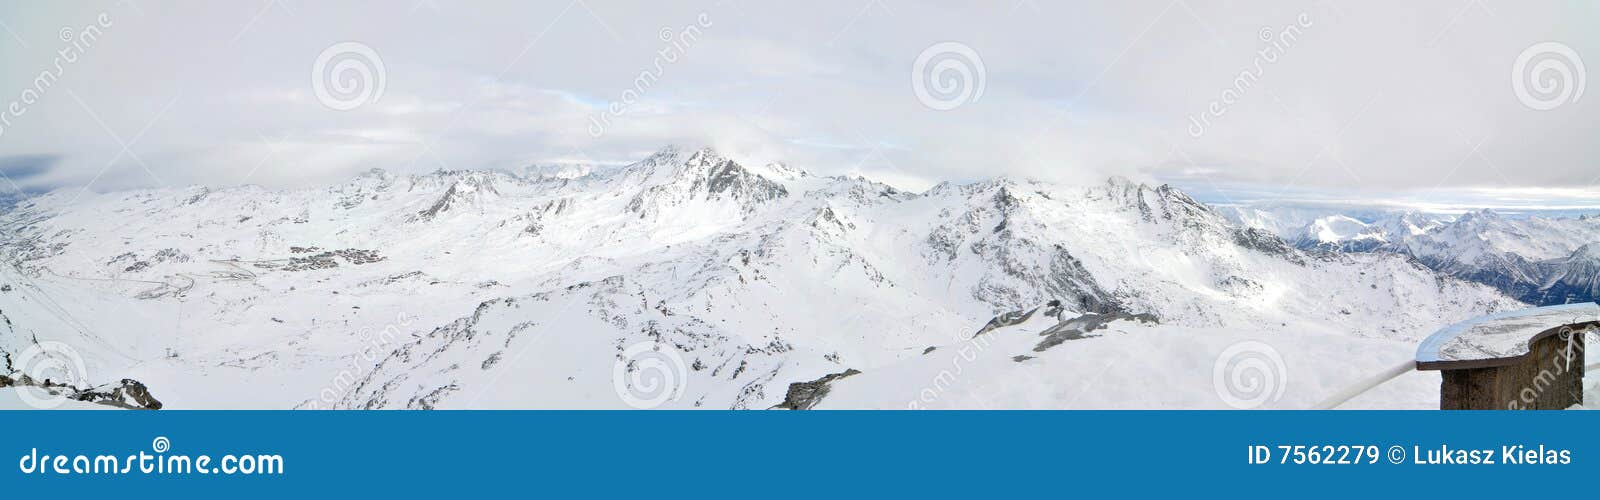 Het Panorama van de Winter van alpen. Het Franse Panorama van de Winter van Alpen dat tijdens mistige dag wordt genomen